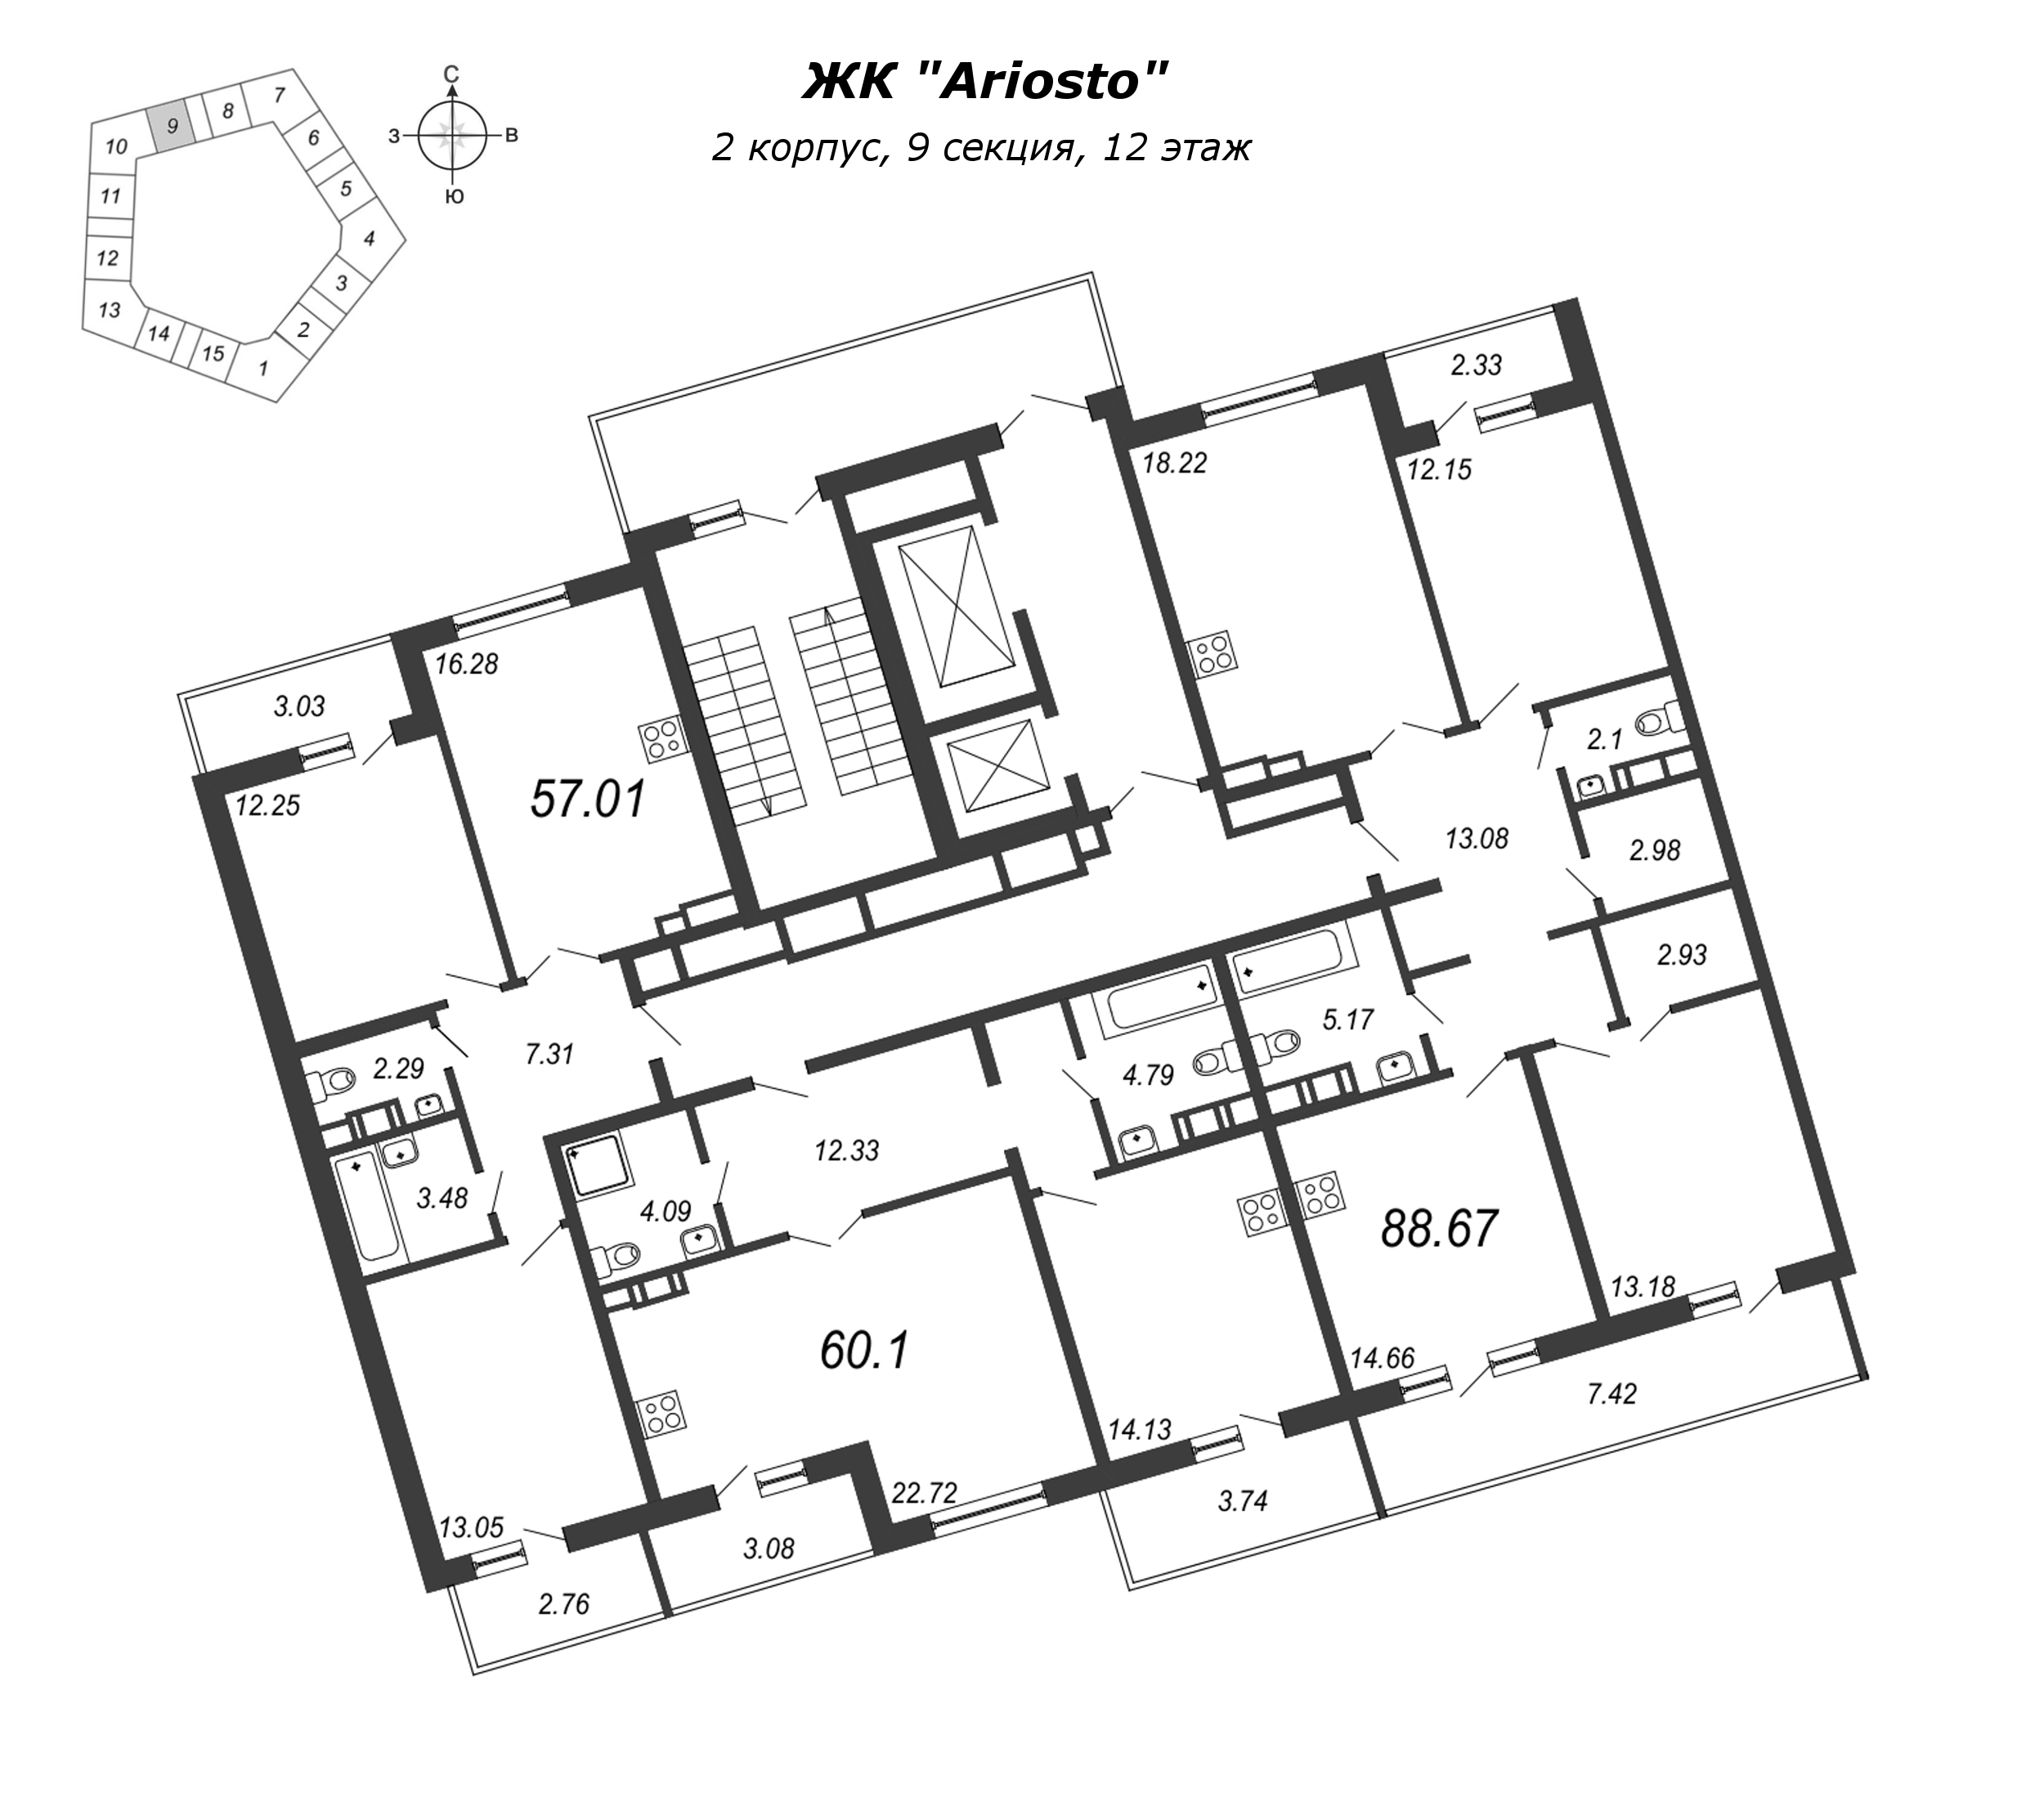 2-комнатная (Евро) квартира, 60.1 м² в ЖК "Ariosto" - планировка этажа